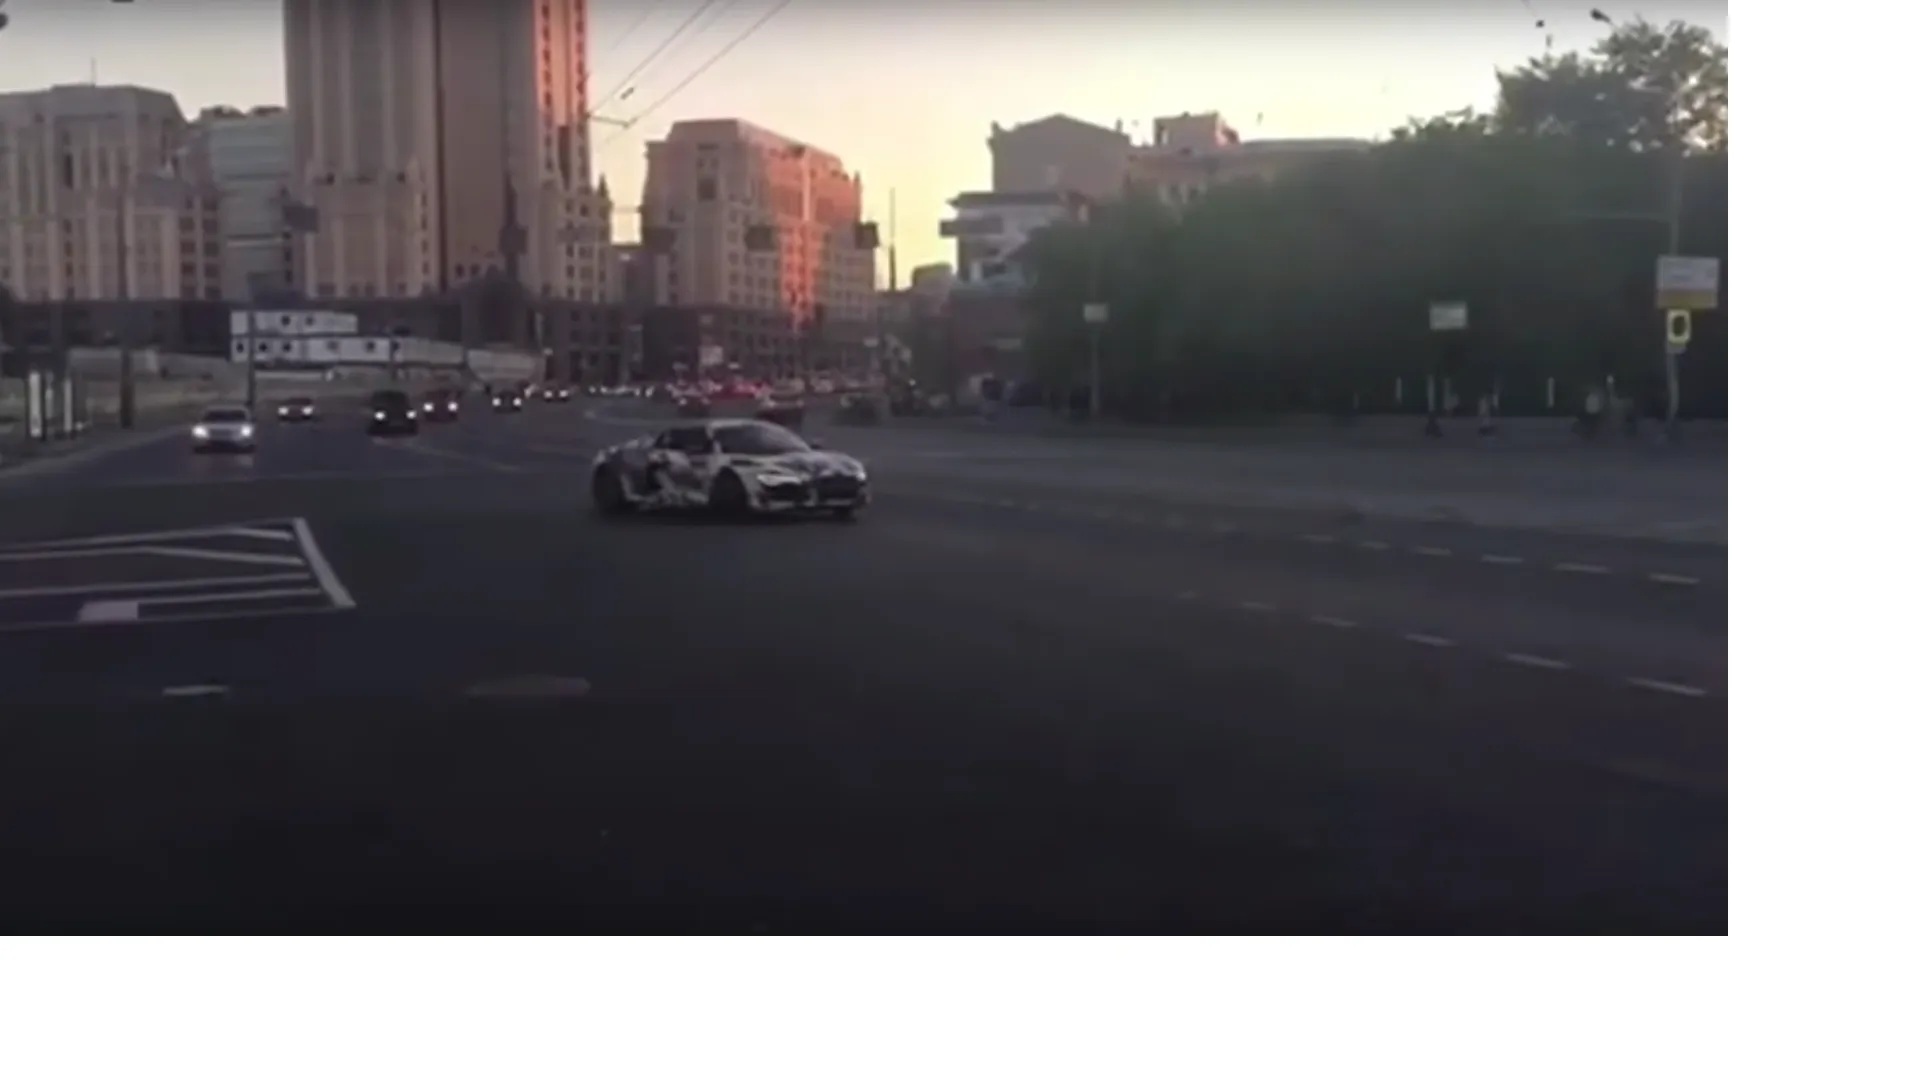 ГИБДД изучает видео с дрифтом стритрейсера по Садовому кольцу в Москве